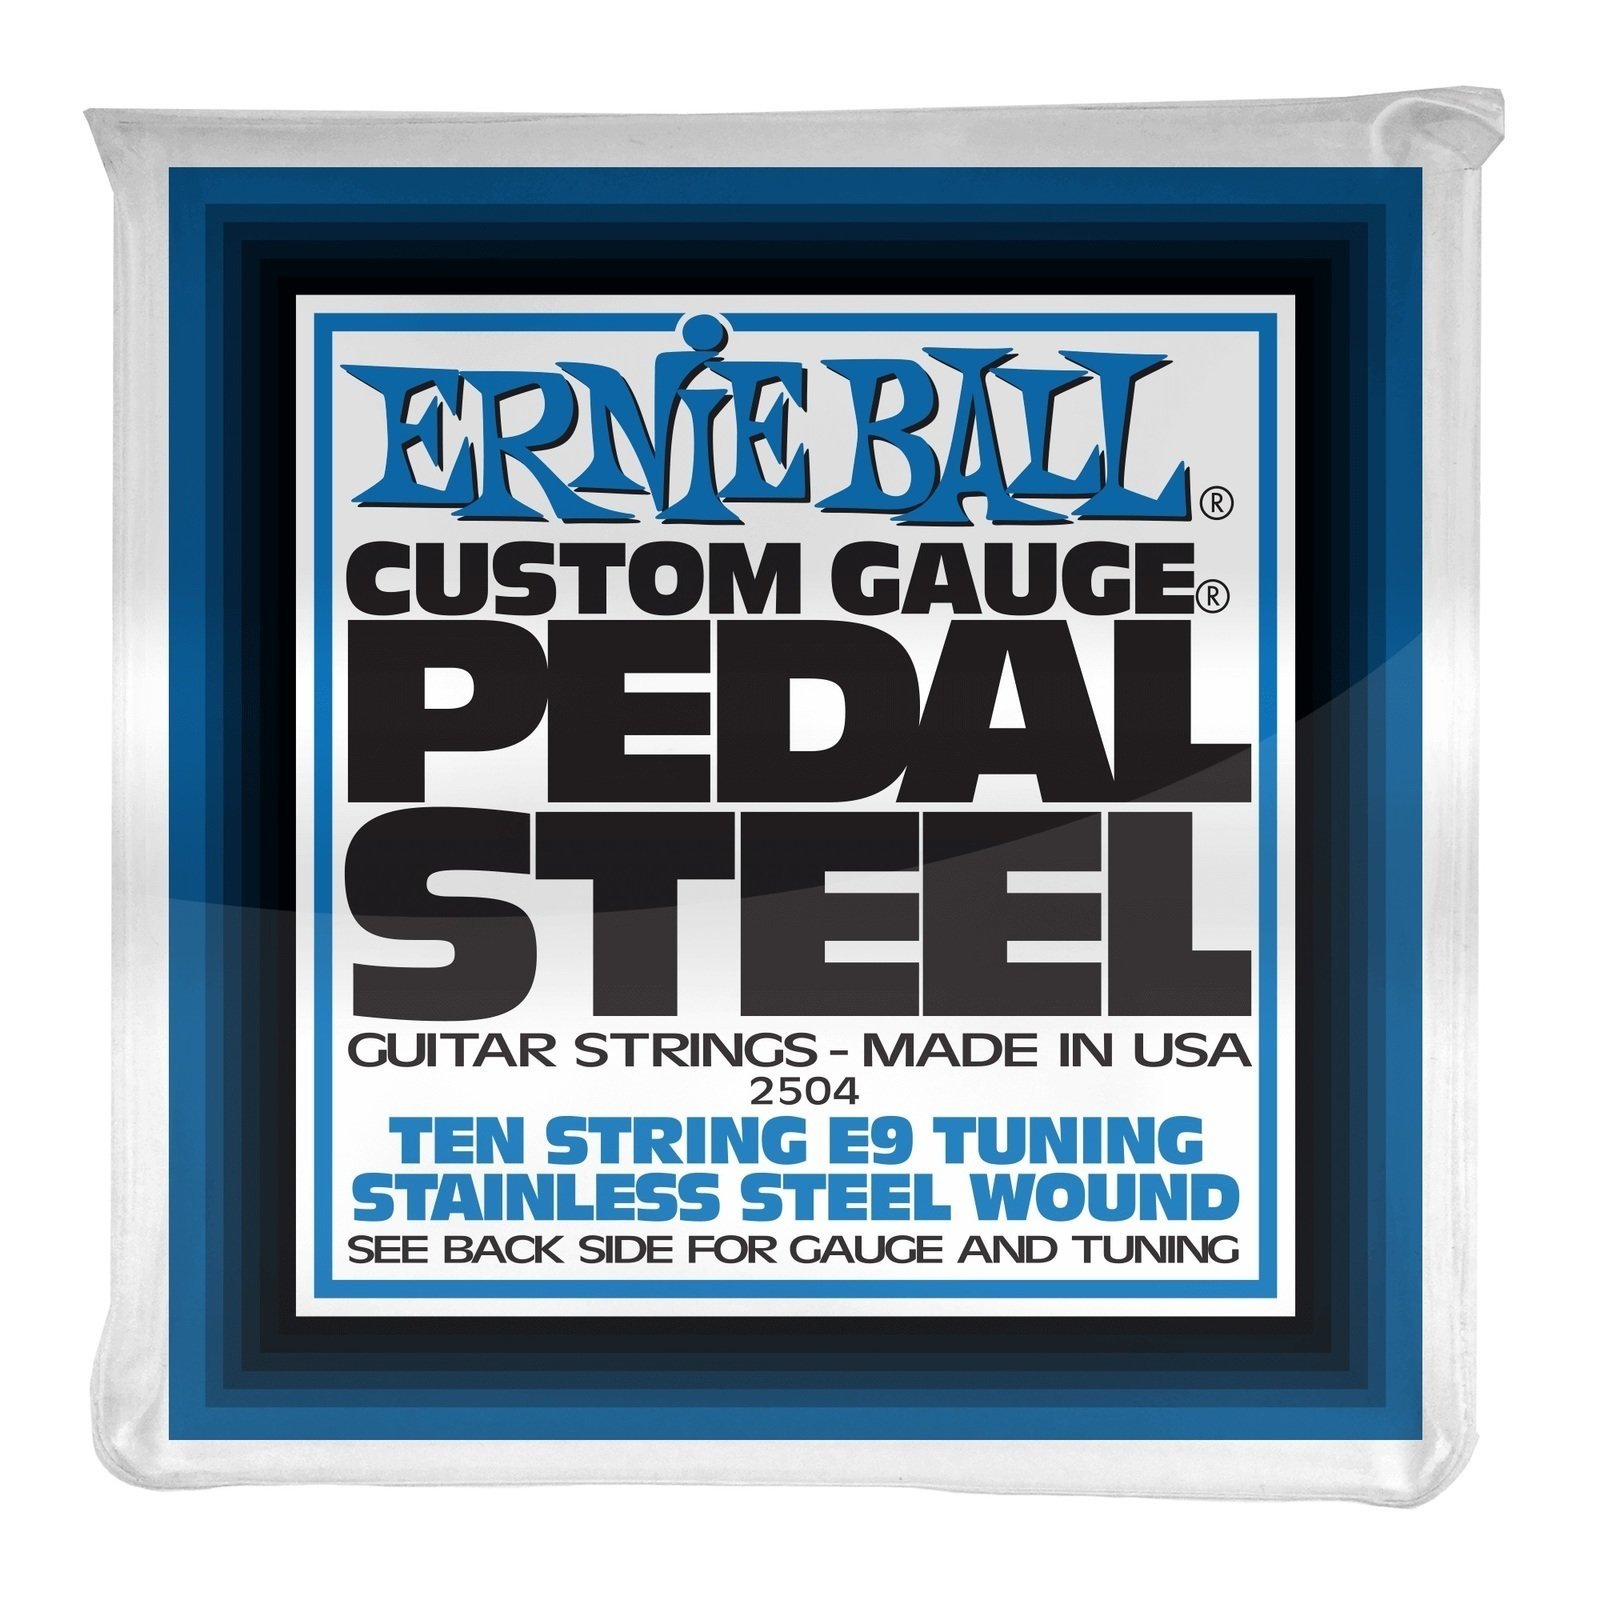 Cuerdas para guitarra Ernie Ball 2504 Pedal Steel